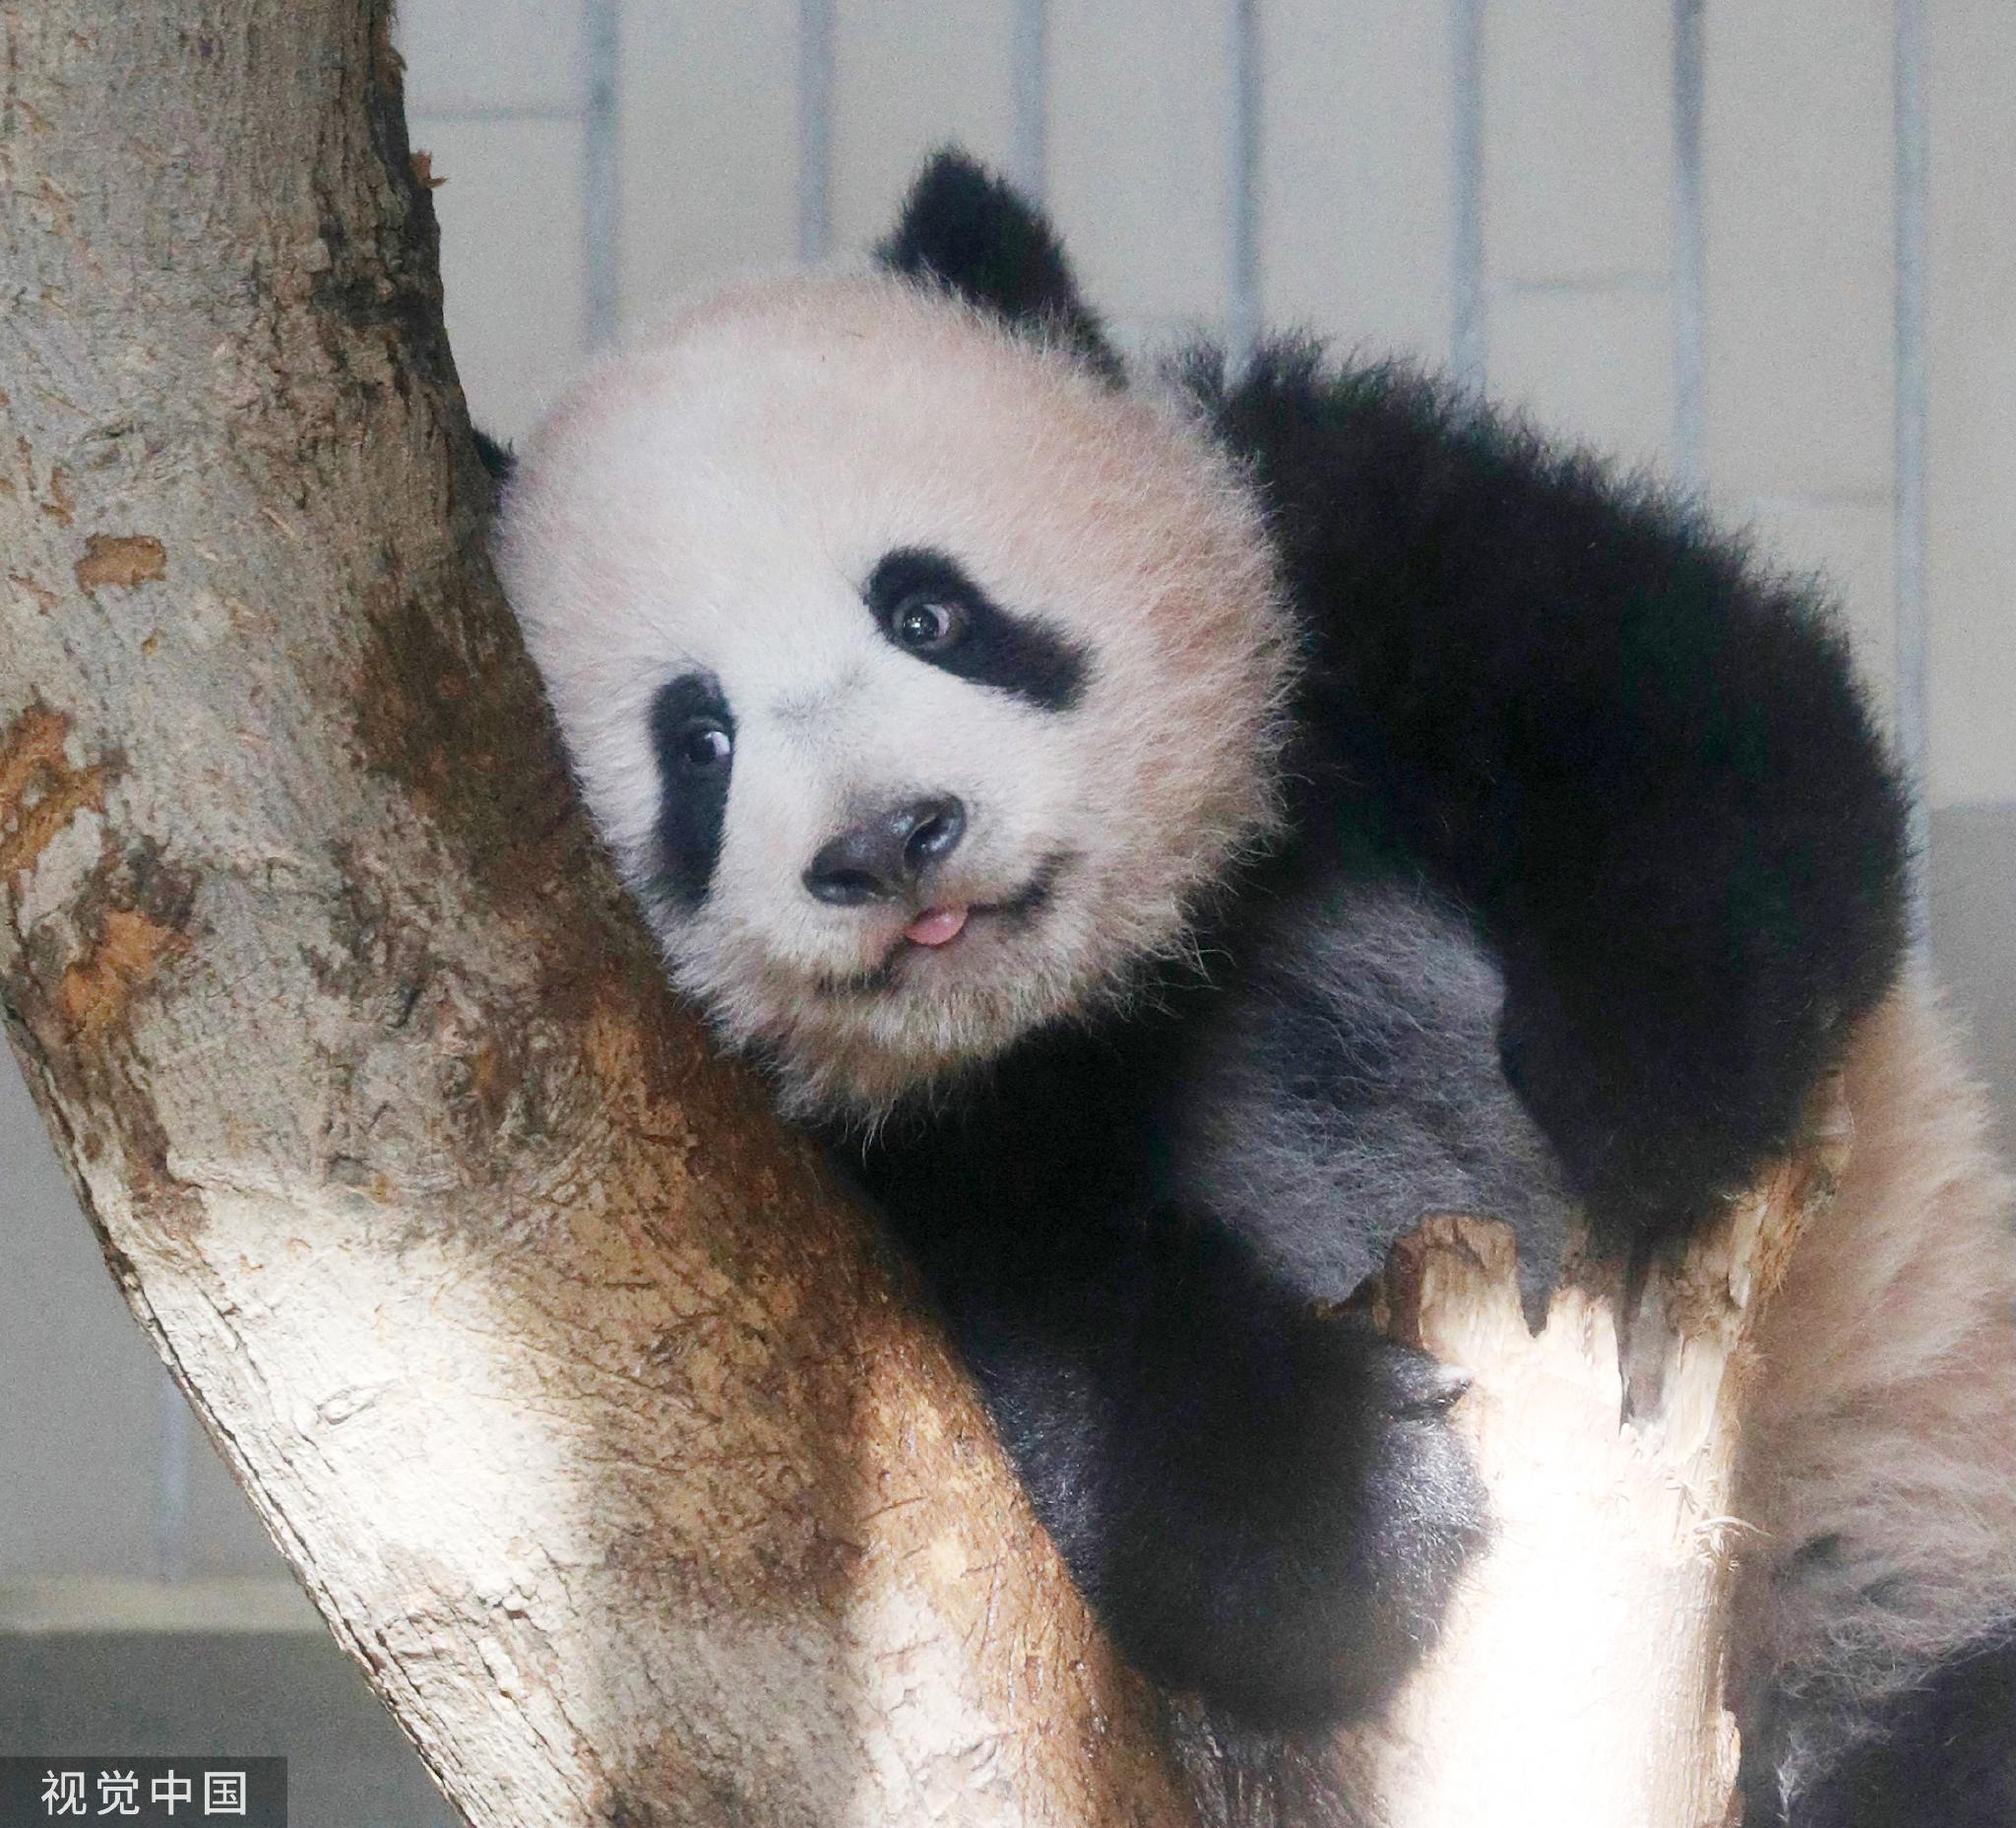 在日本出生的大熊猫“香香”归还中国日期第四次推迟